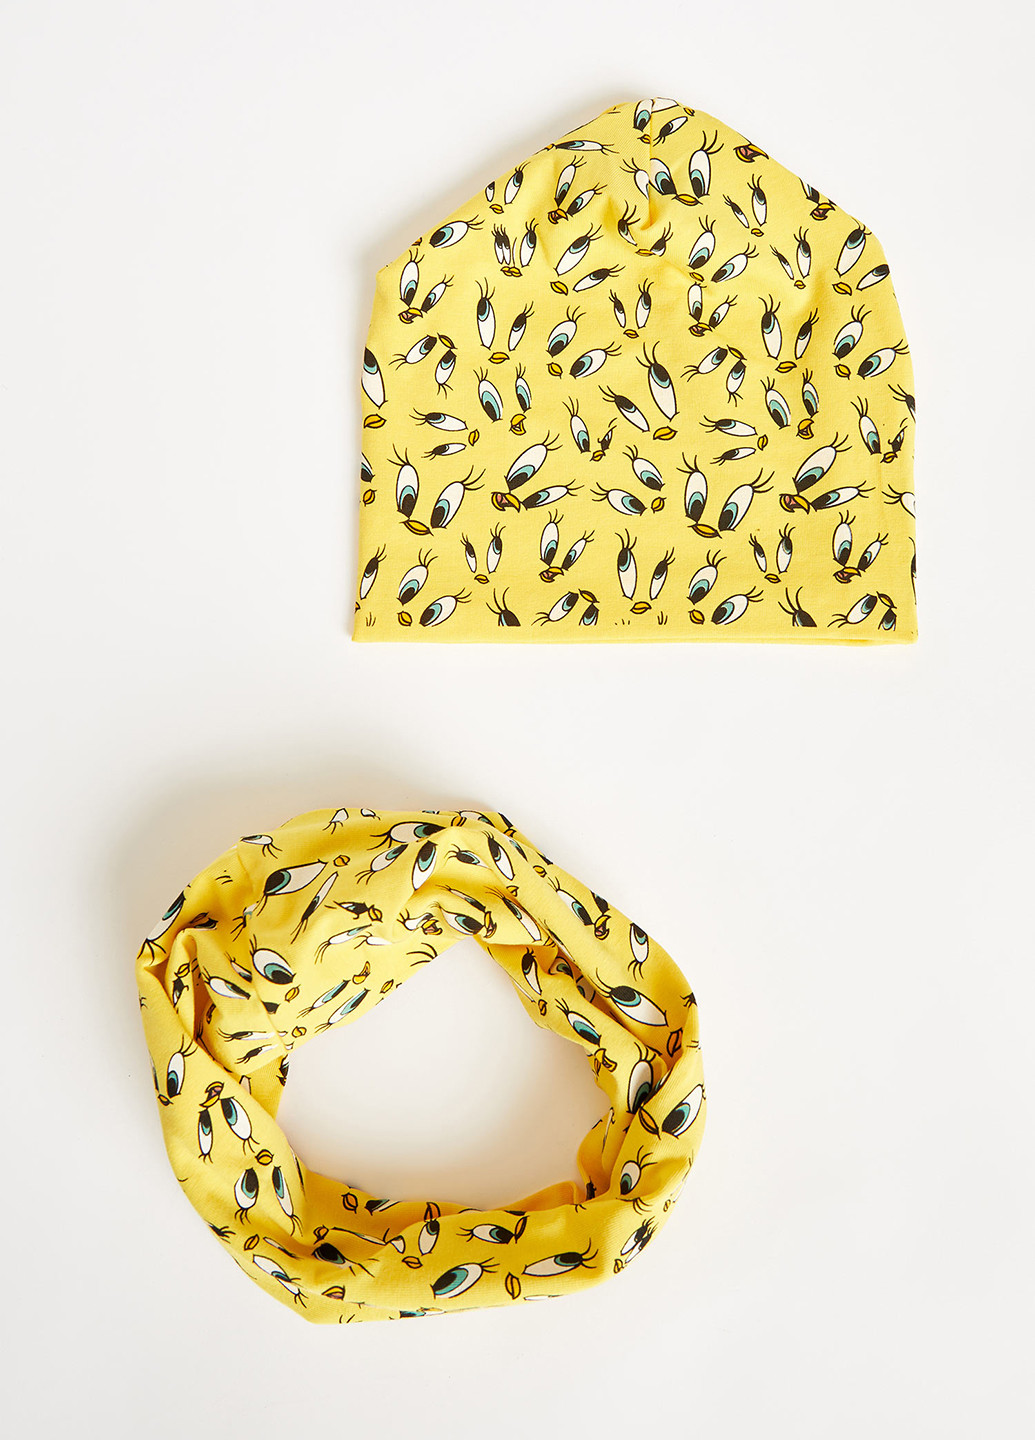 Комплект (шапка, шарф-снуд) DeFacto шапка + шарф-снуд персонажи жёлтые кэжуалы трикотаж, хлопок